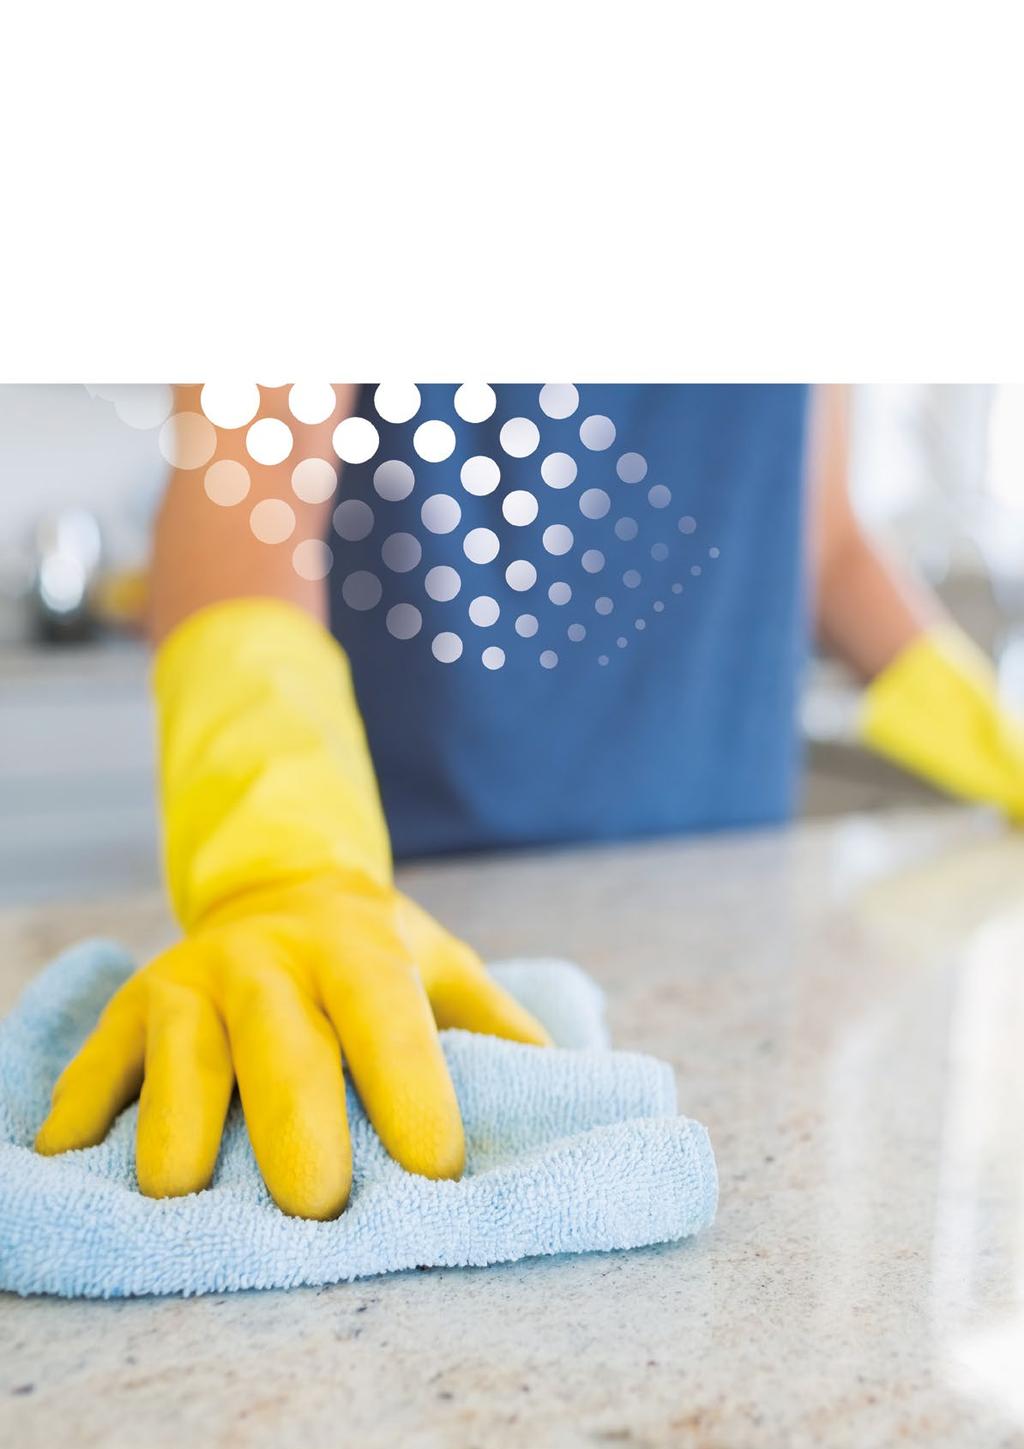 A hatékony tisztítás feltétele a megfelelően kiválasztott, felület specifikus tisztítószer alkalmazása.